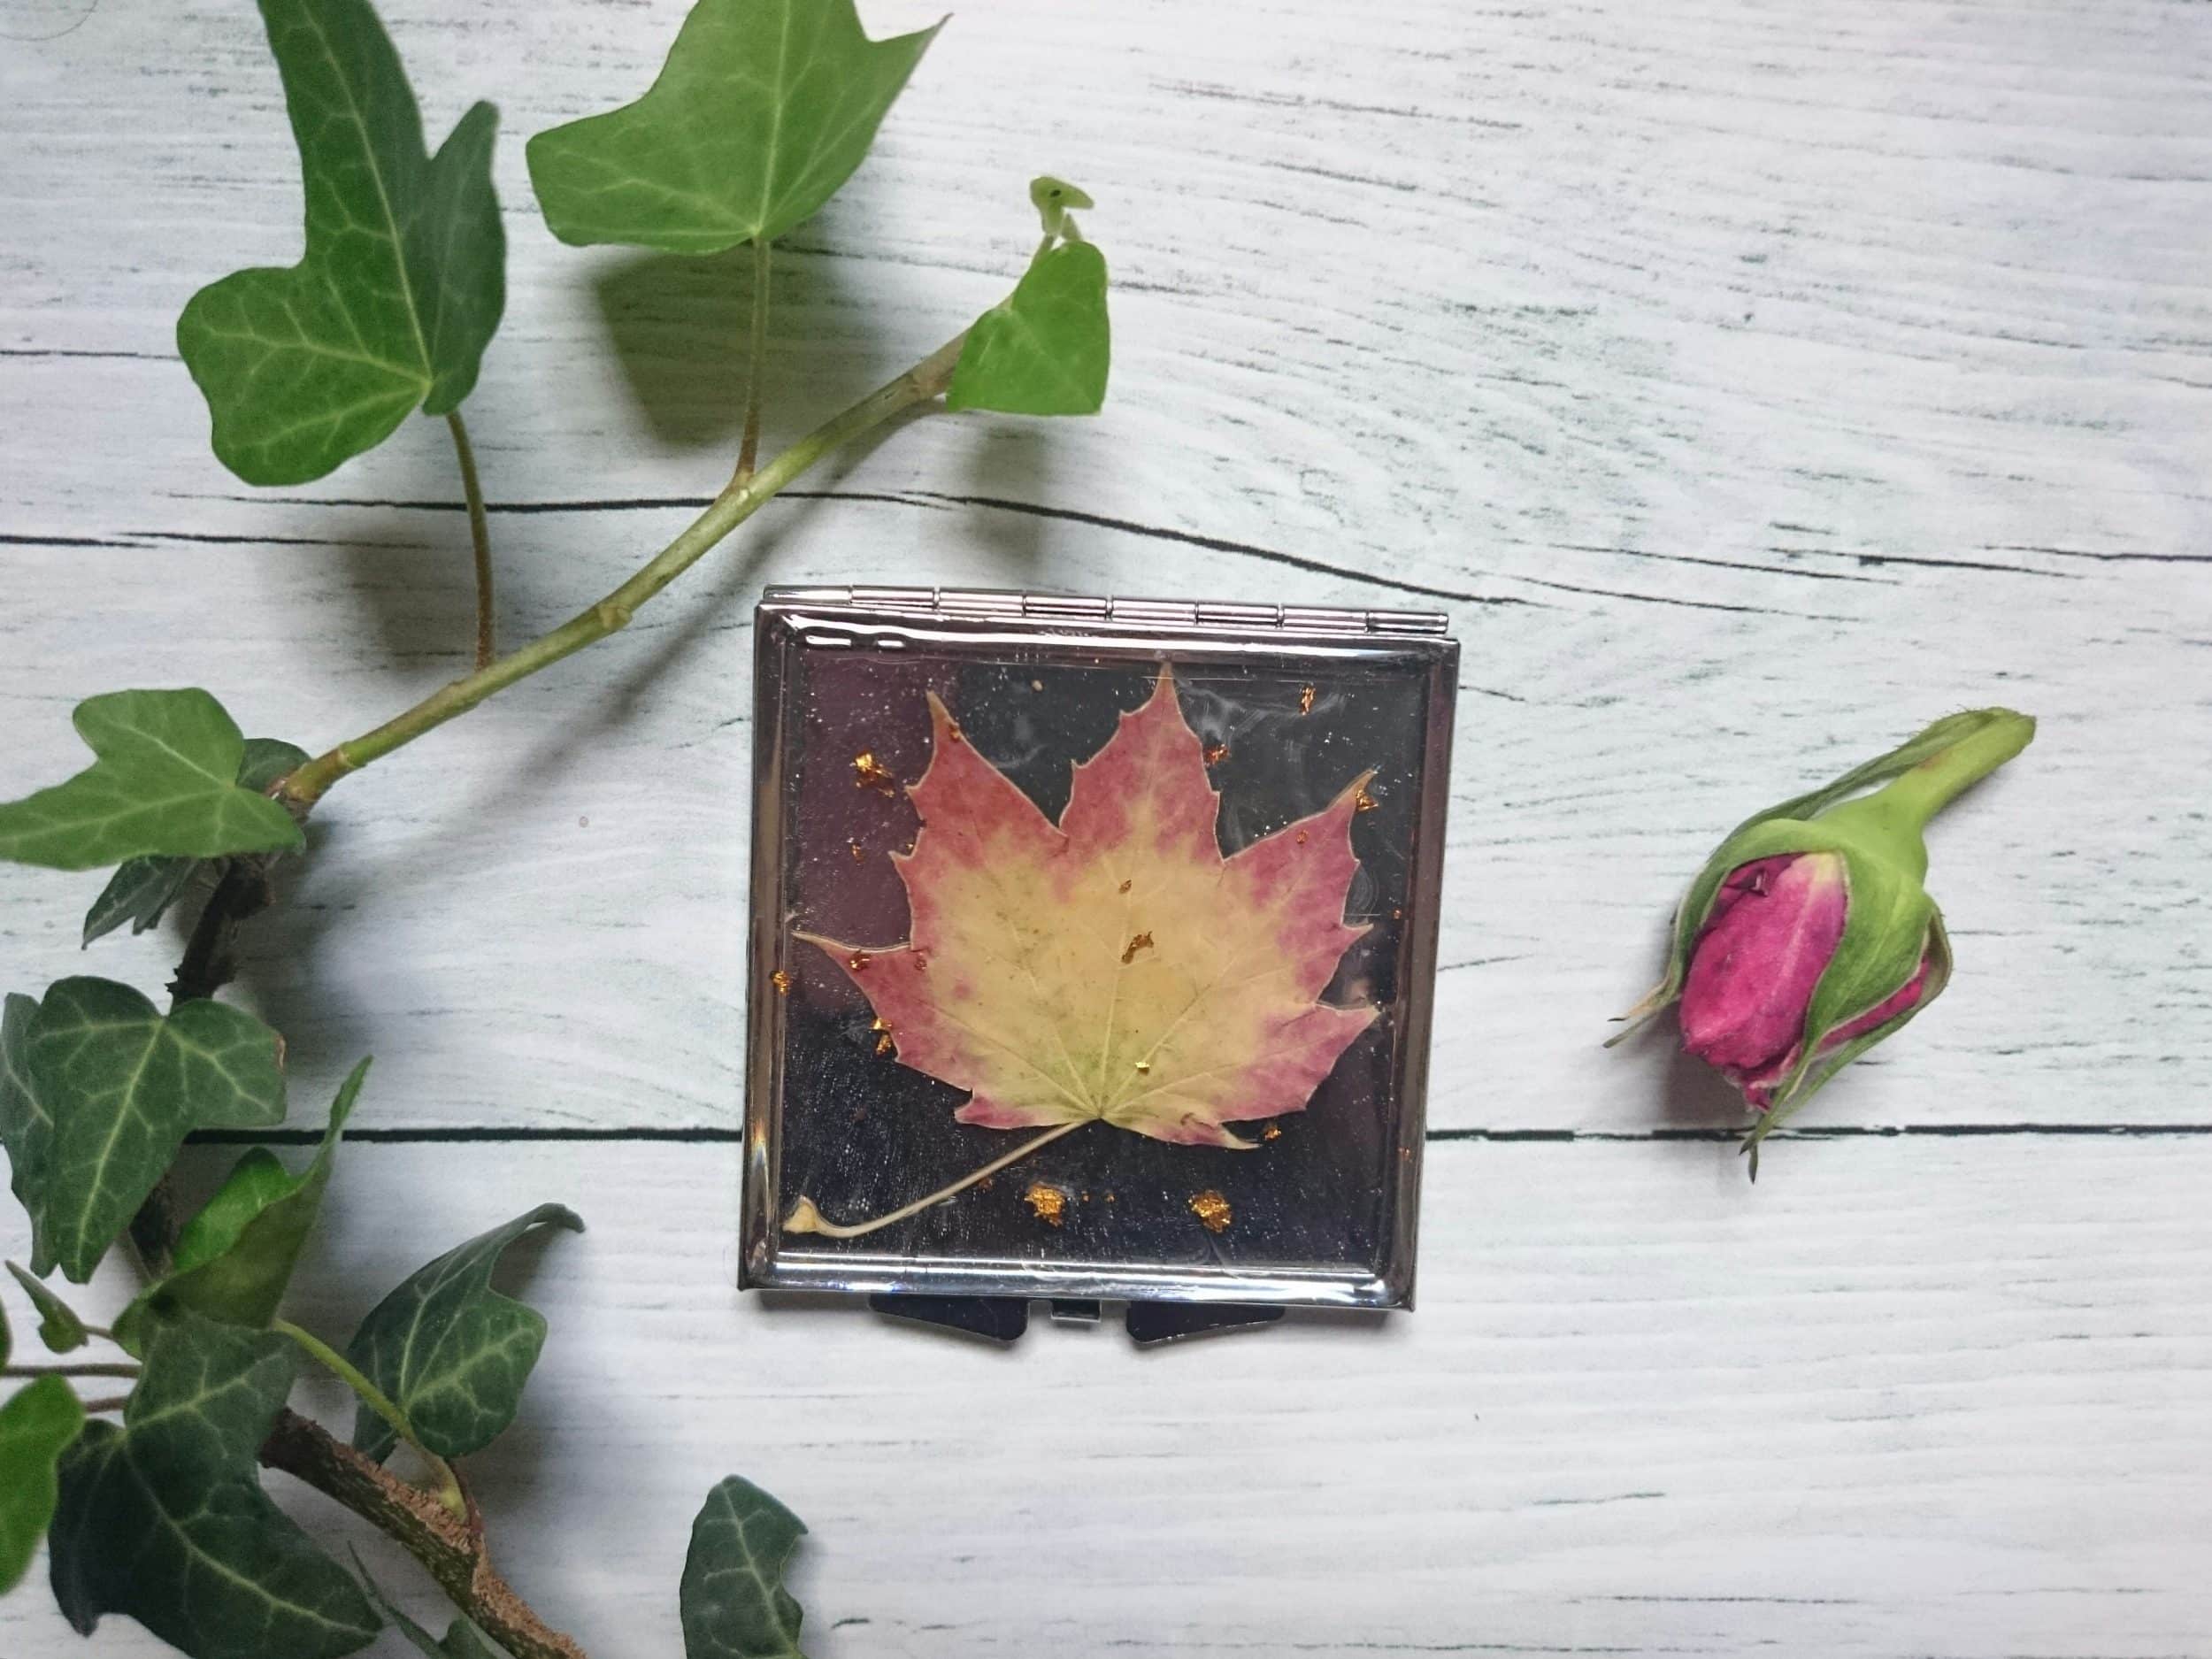 Miroir de poche carré, argenté avec un décor végétal en inclusion : feuille d'automne beige dégradé verrs le roux